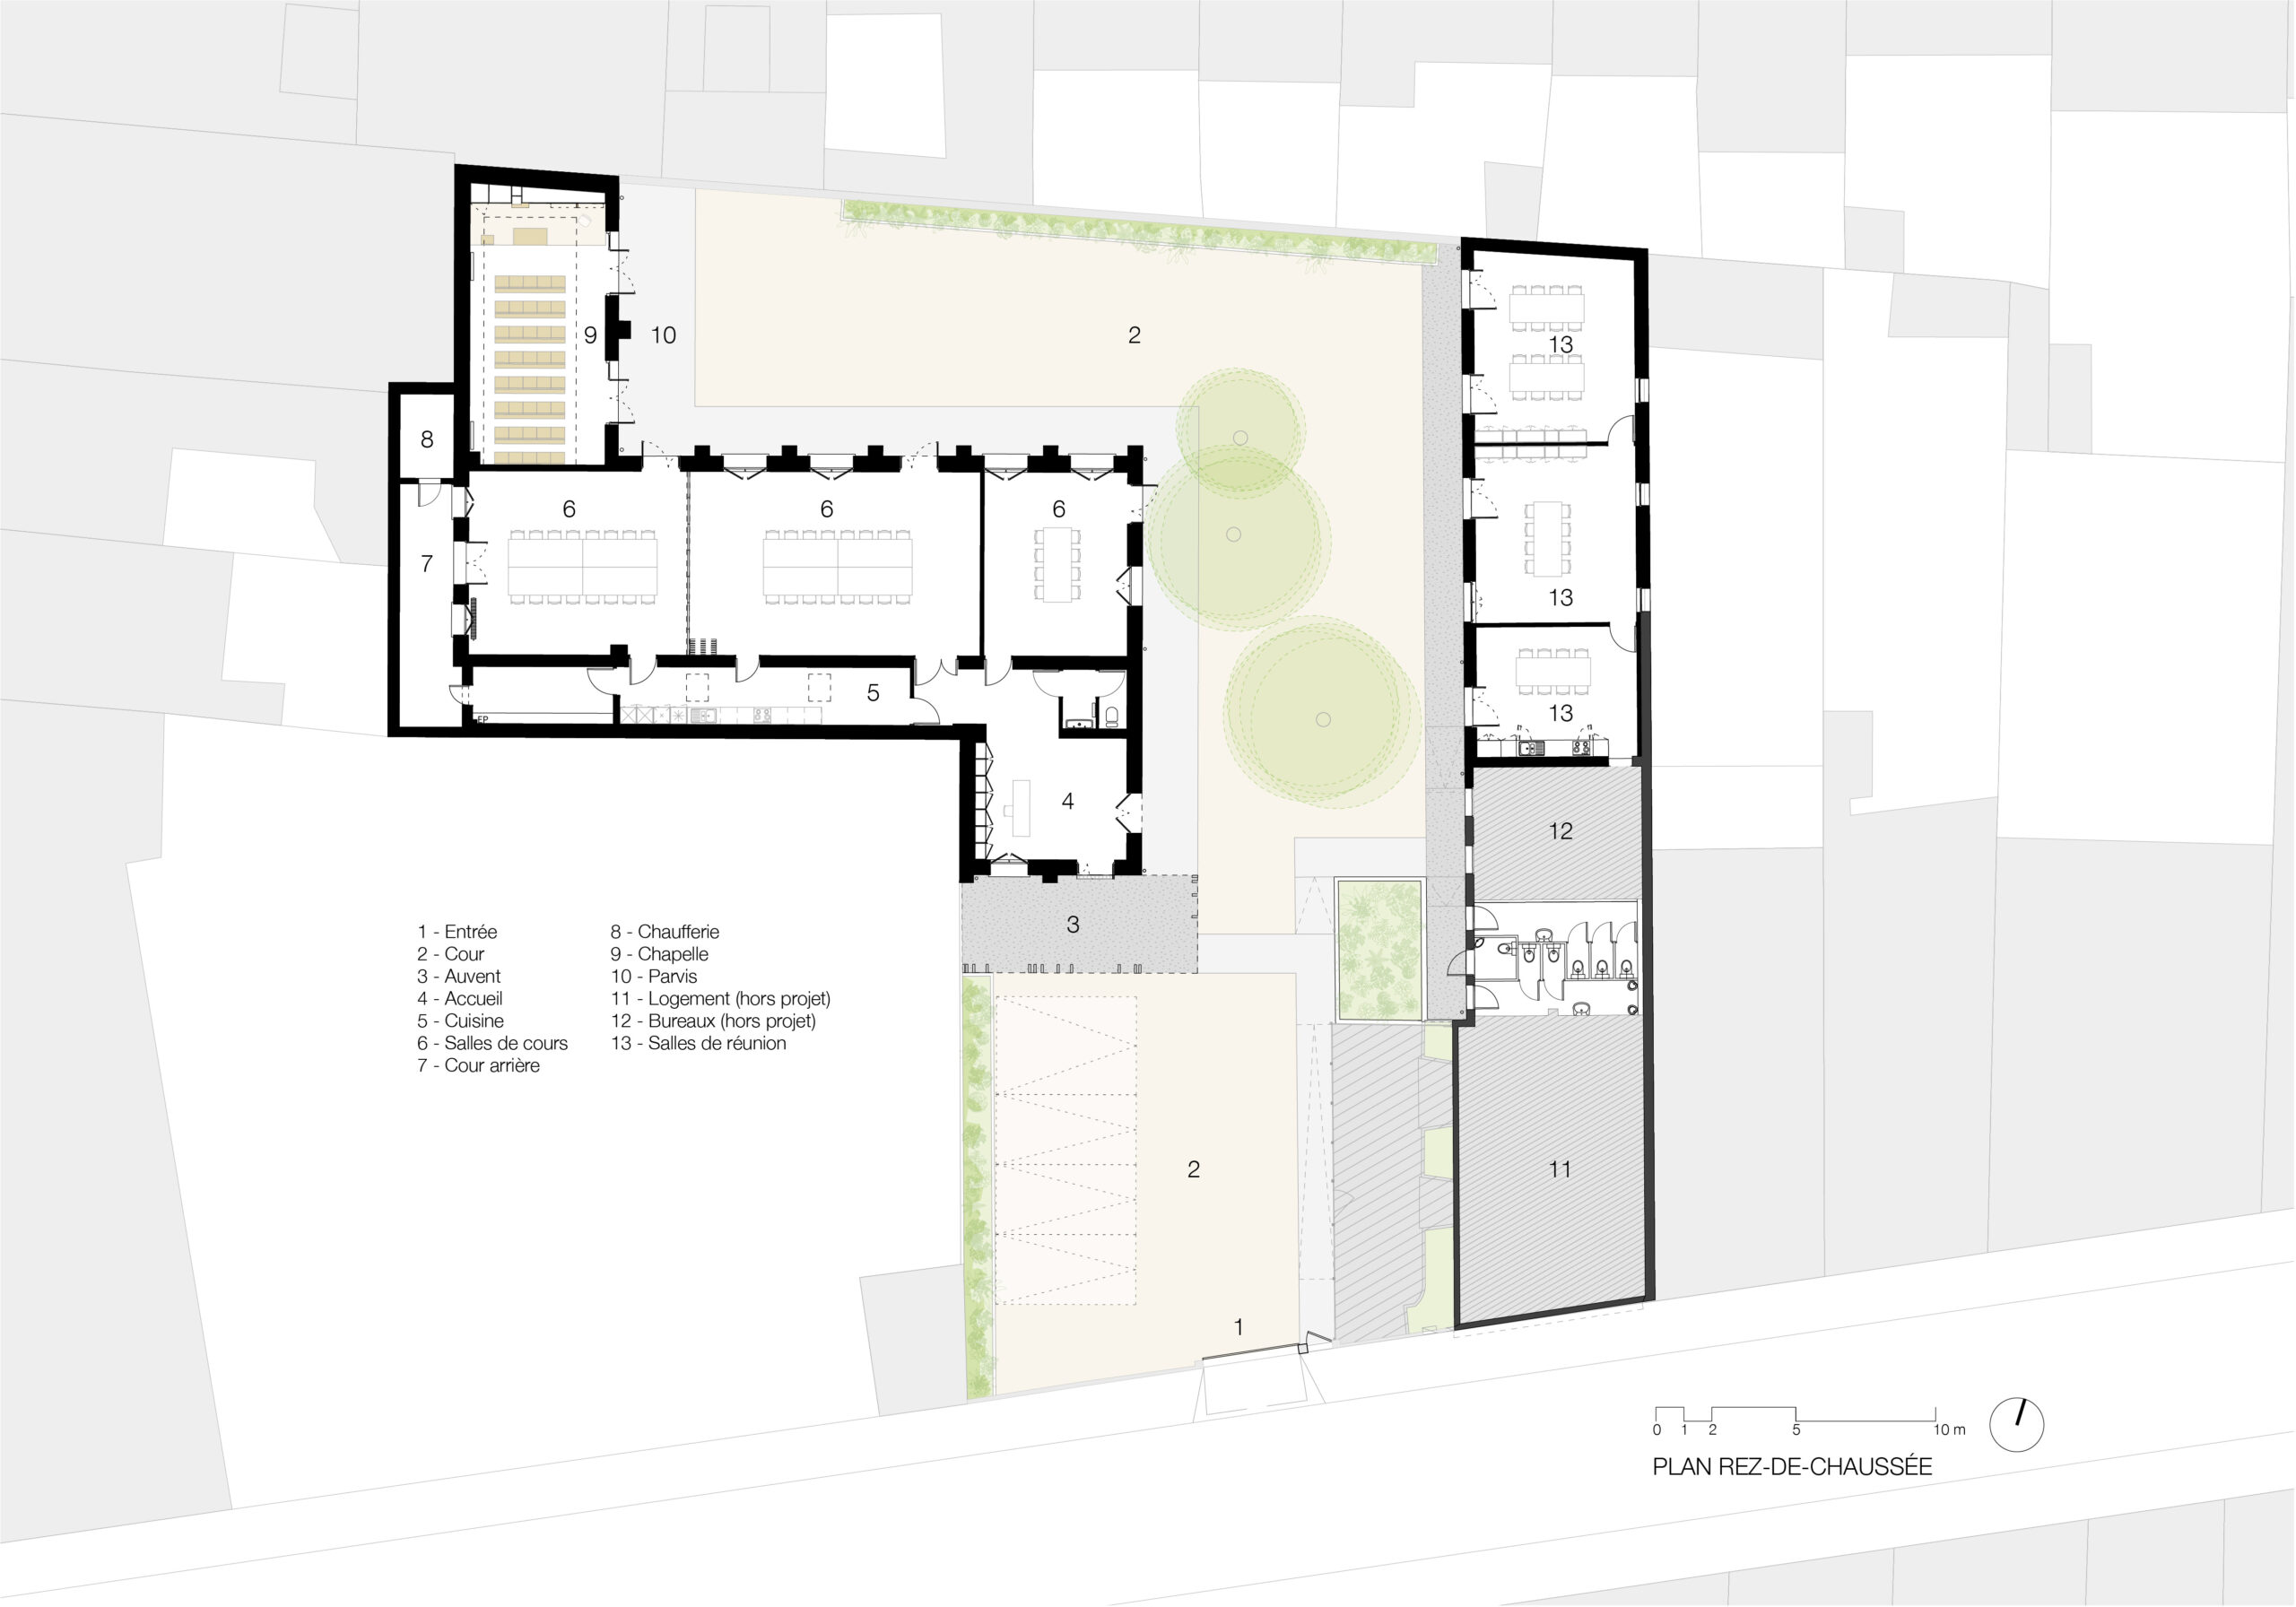 Plan rez-de-chaussée / Lauren Havel & Mathias Cisnal Architectes